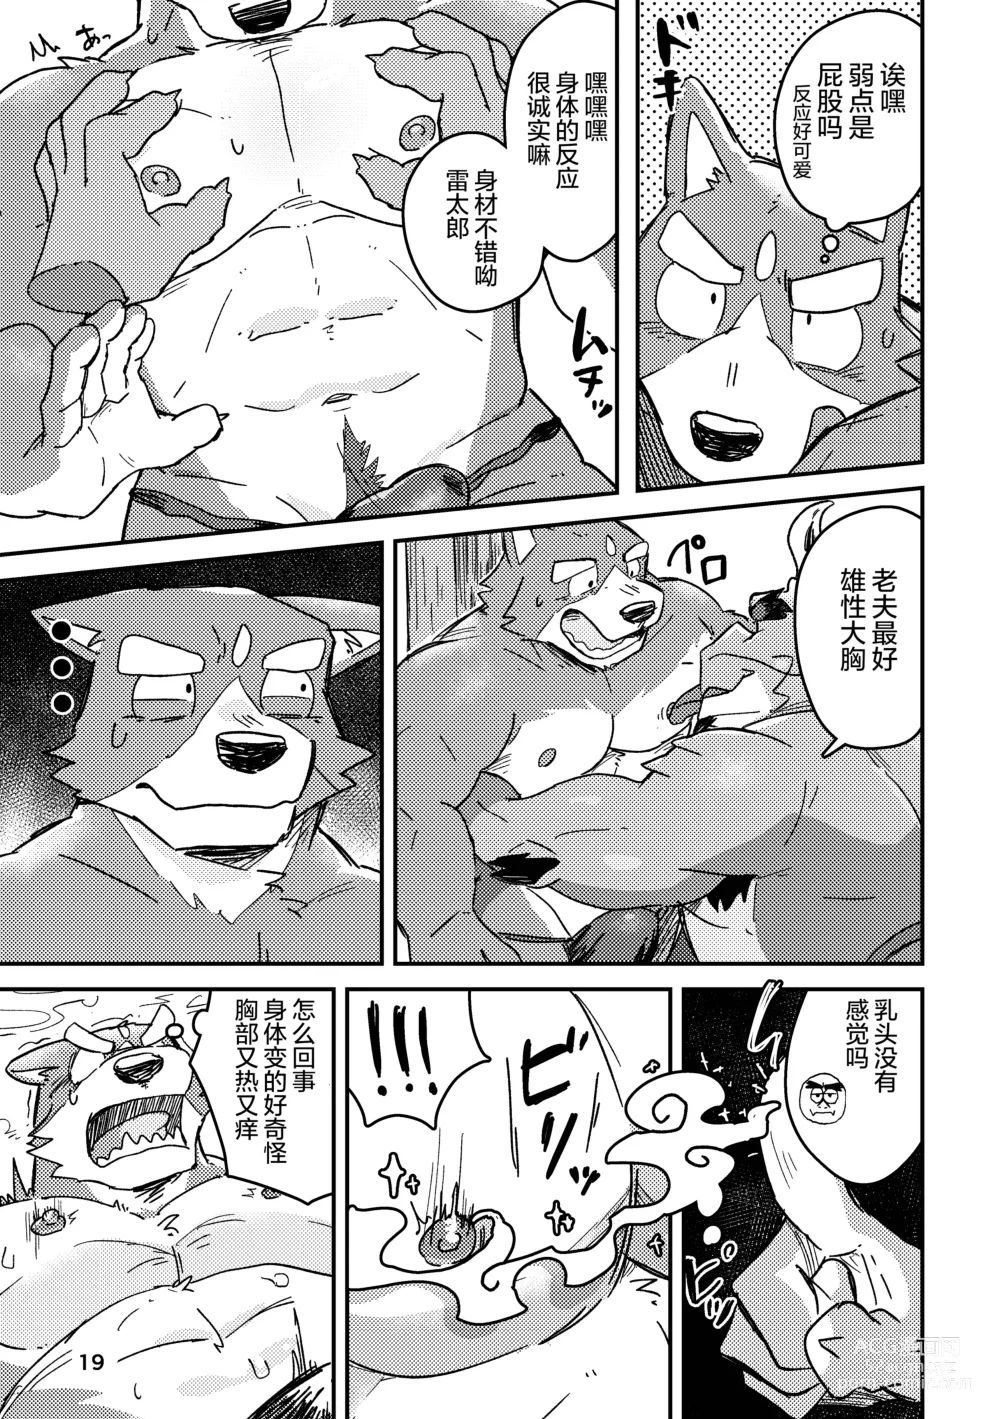 Page 19 of doujinshi 约定的龙穴